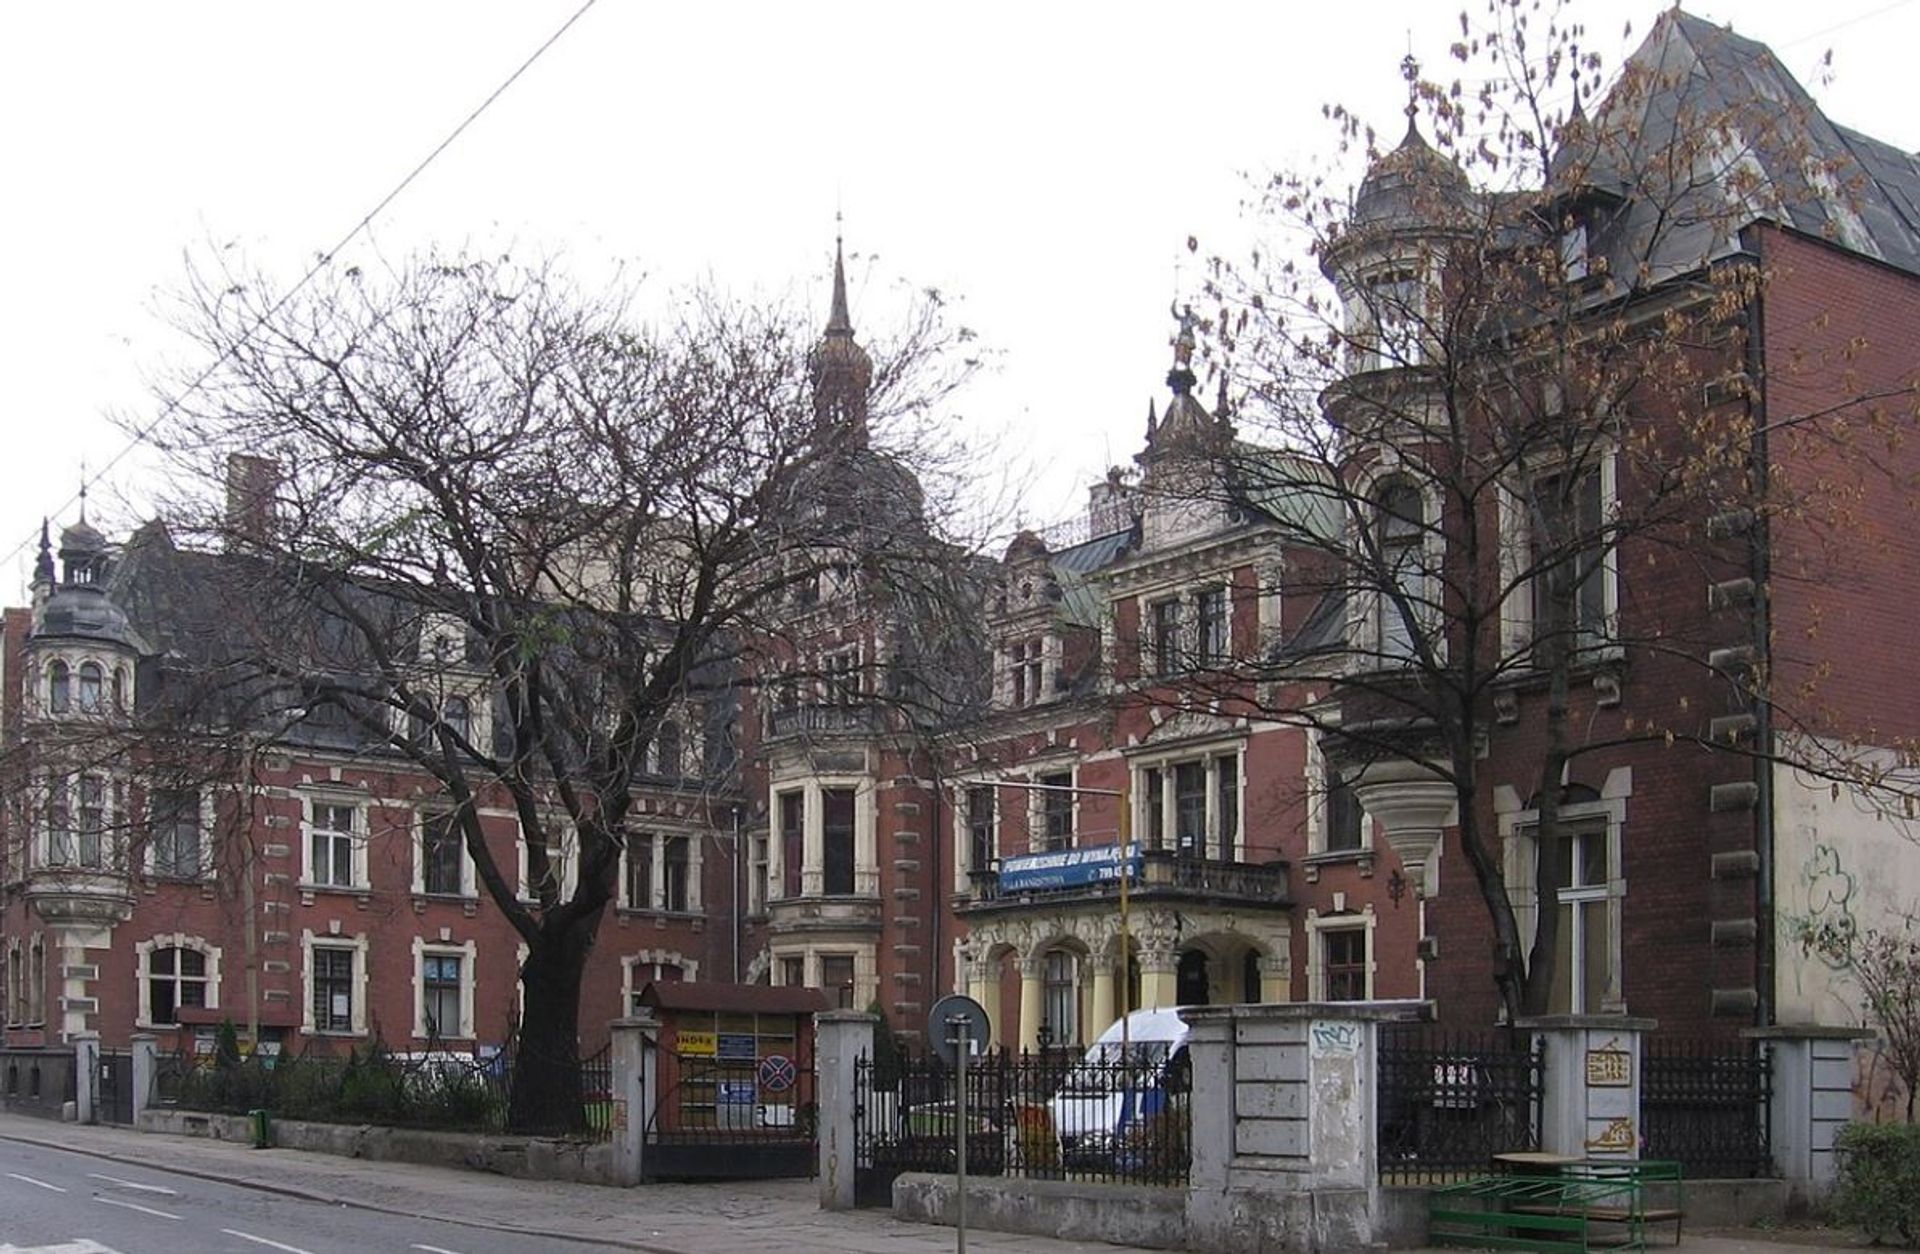 Miasto Wrocław kupiło za 9 mln zł dawny, zabytkowy Pałac Schaffgotschów przy ulicy Kościuszki